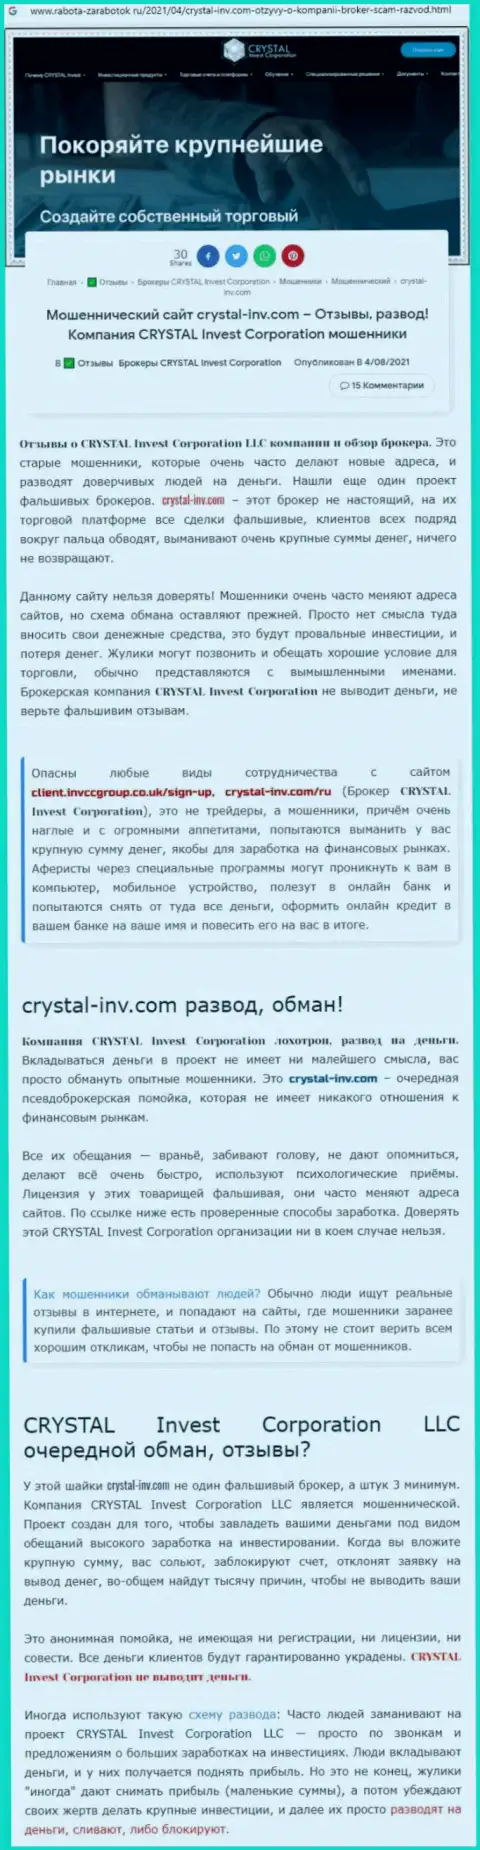 Материал, выводящий на чистую воду контору Crystal-Inv Com, позаимствованный с сайта с обзорами мошеннических деяний различных контор